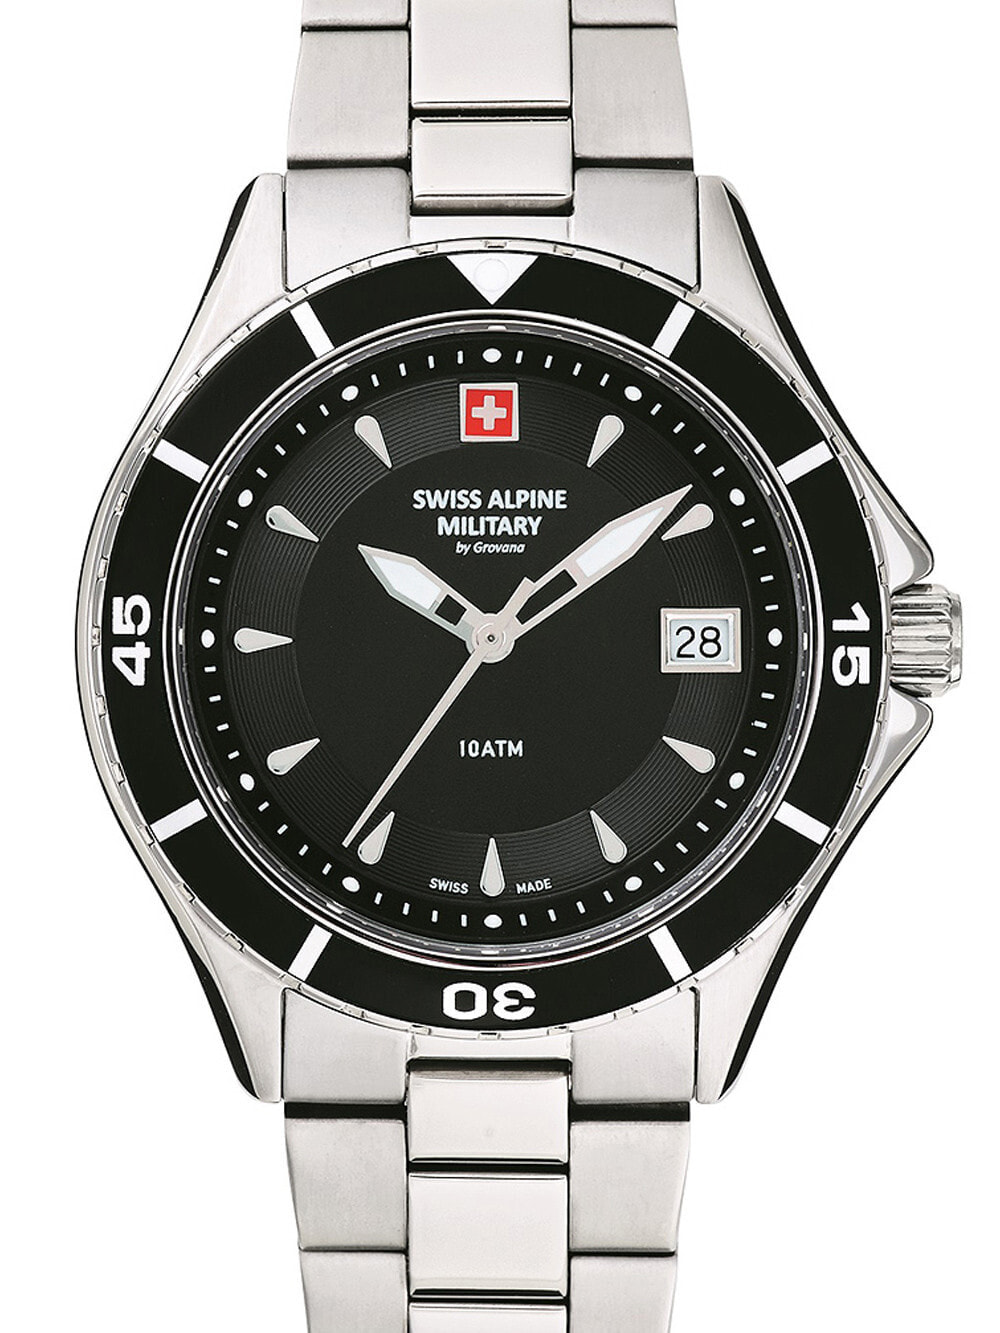 Женские наручные кварцевые часы Swiss Alpine Military окошко с датой. Ремешок нержавеющая сталь.